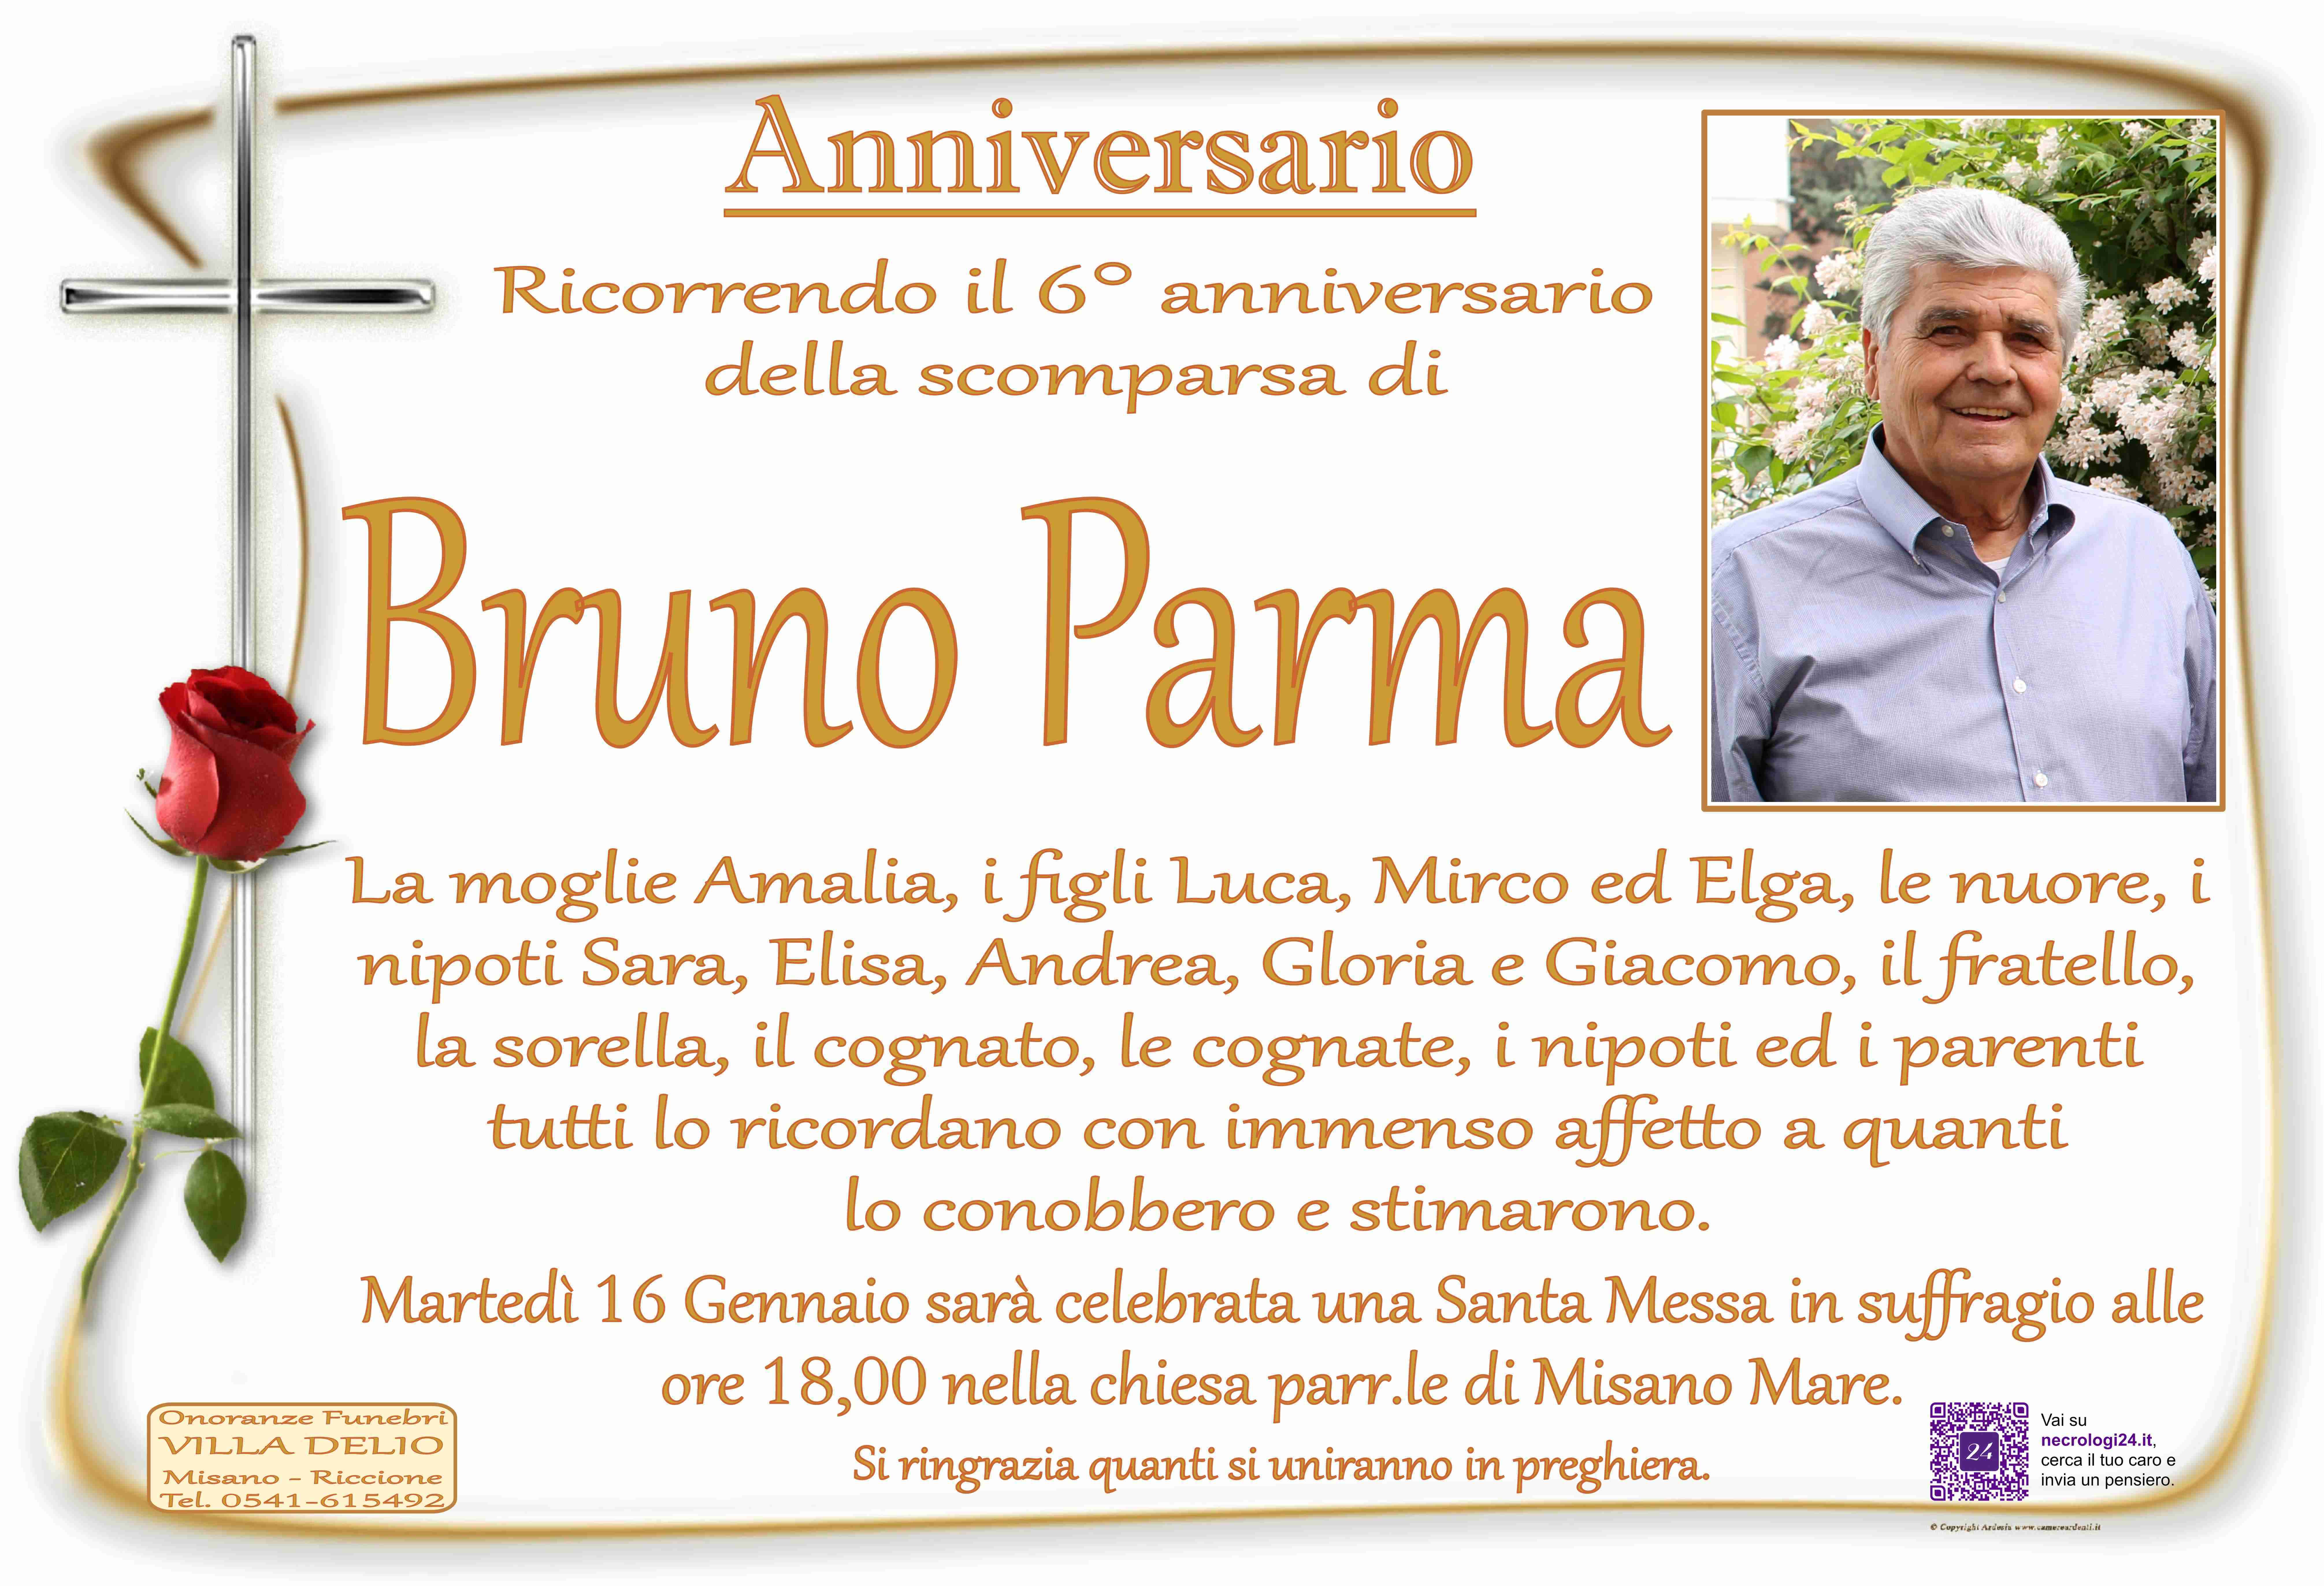 Bruno Parma